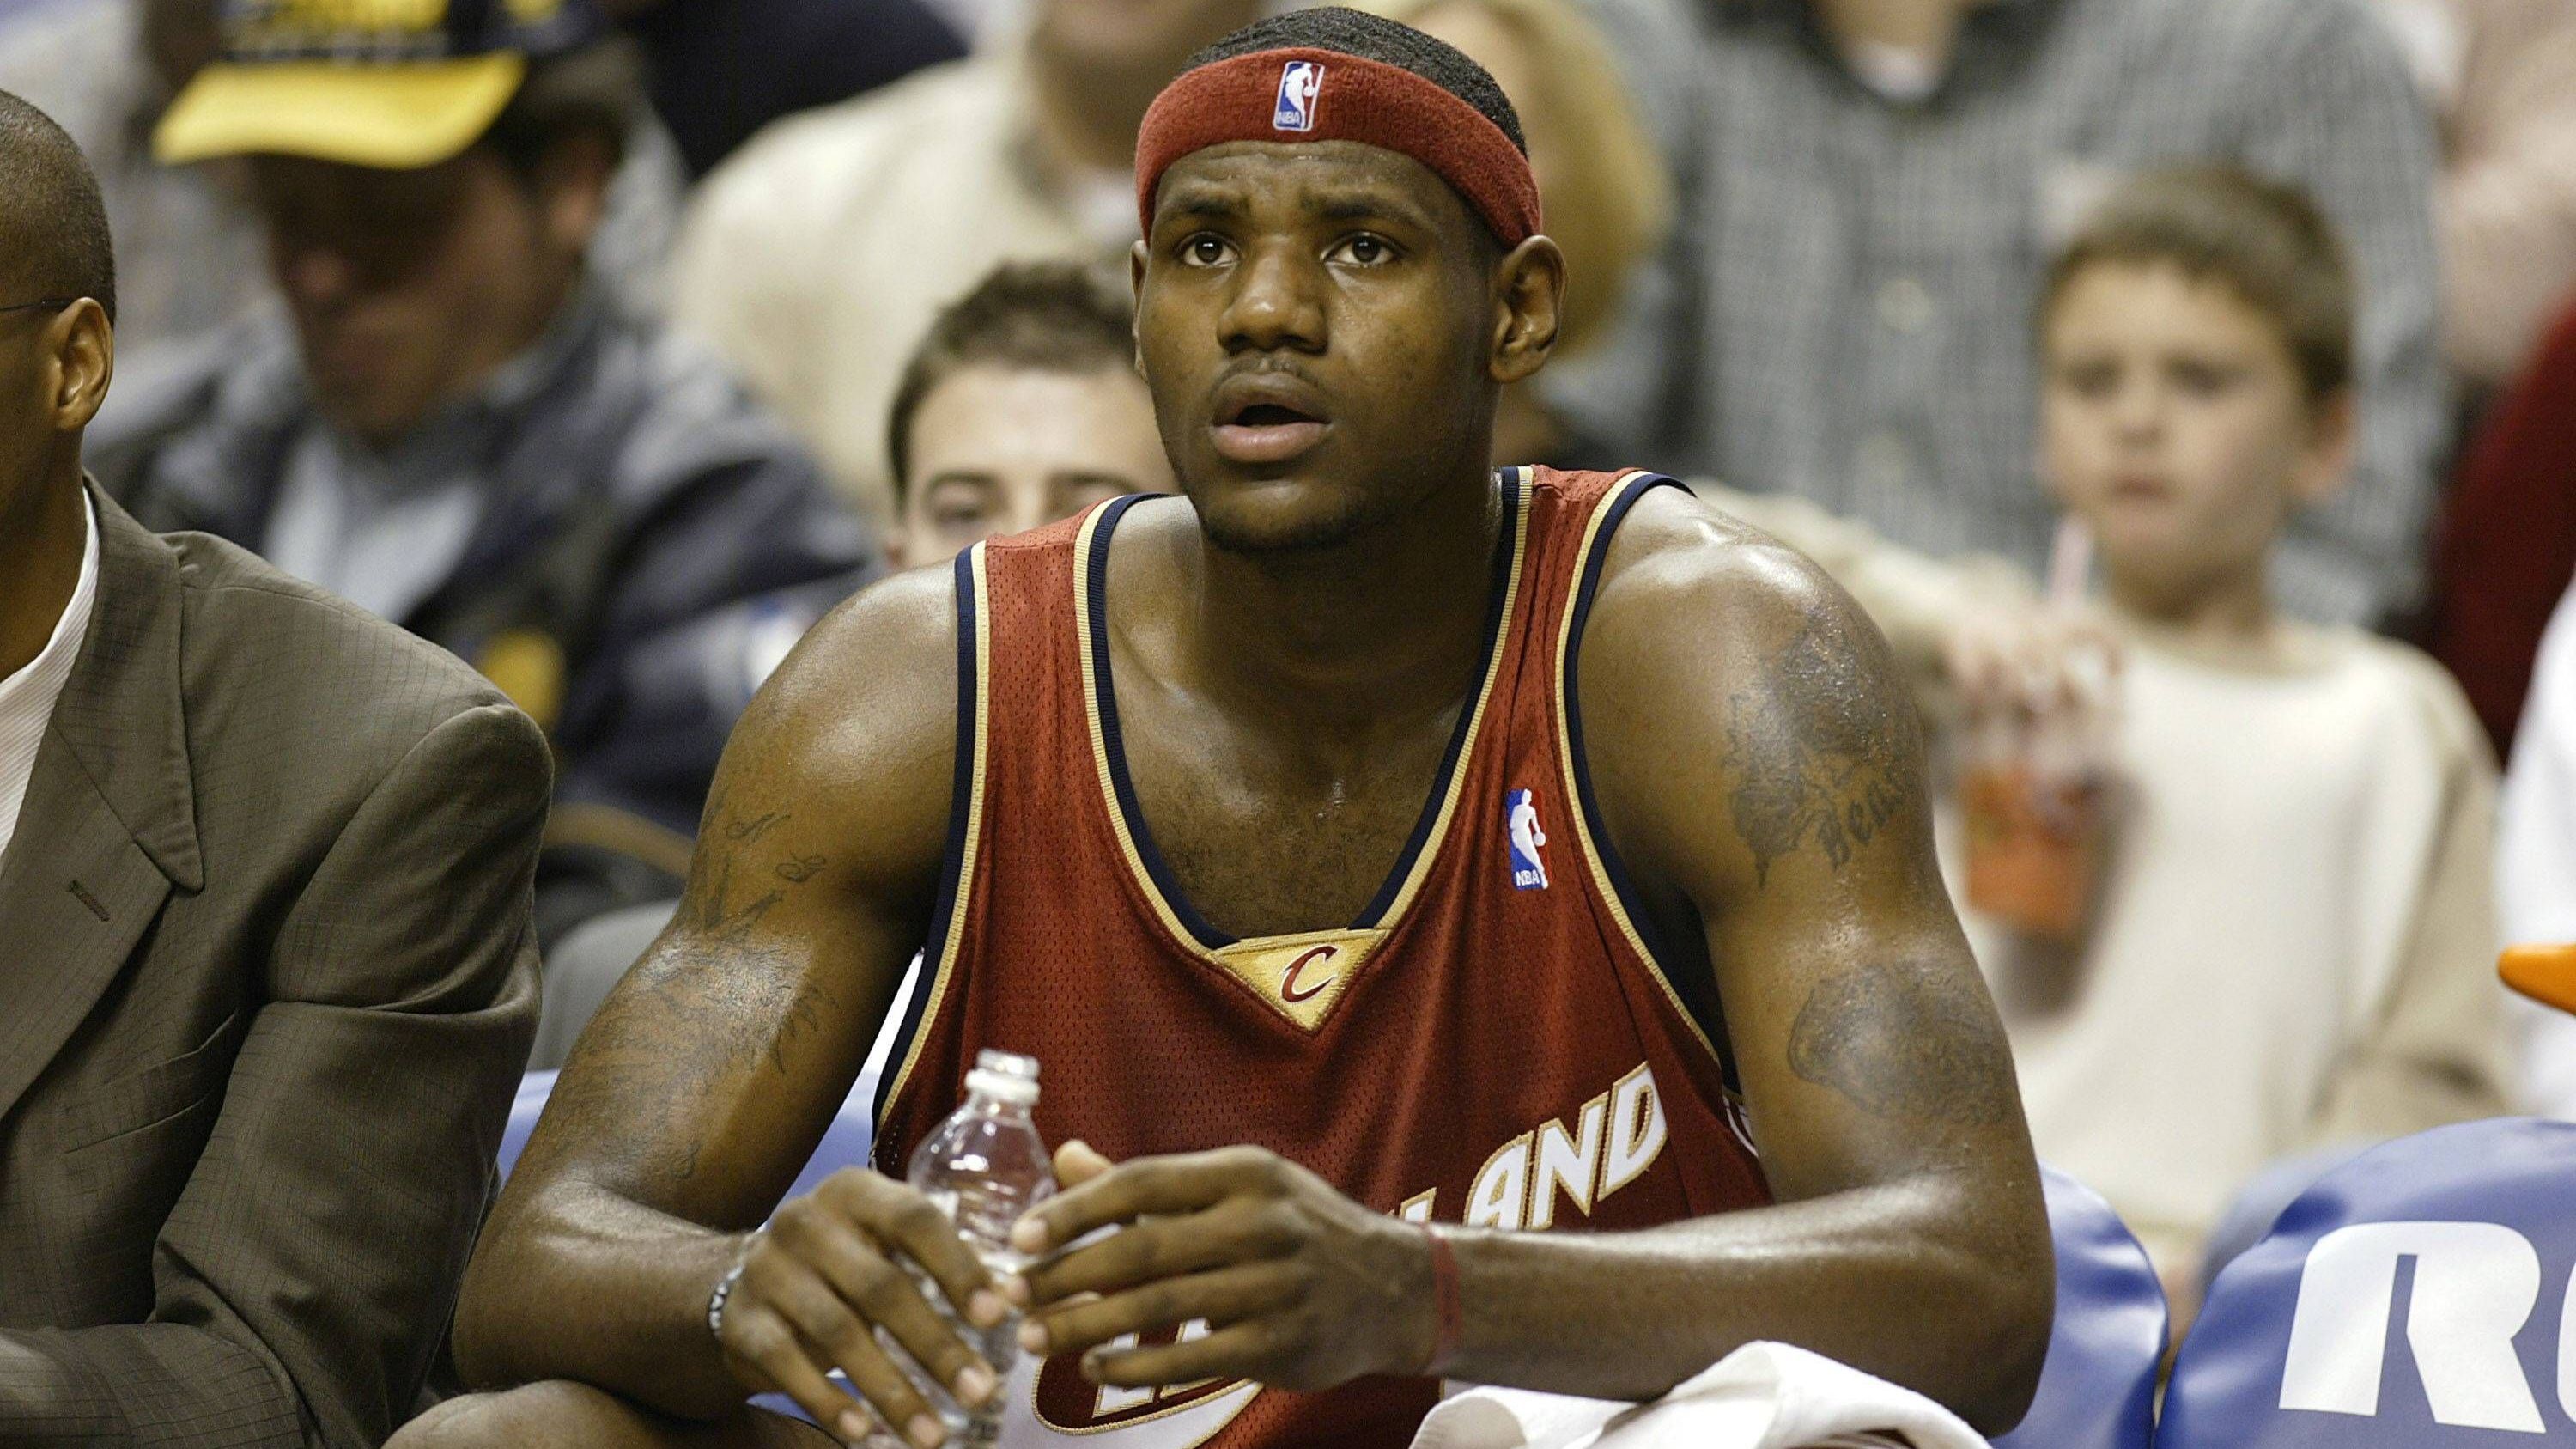 <strong>LeBron James (Cleveland Cavaliers) - 1. Pick 2003</strong><br>Am Ende wurde es LeBron James. Der Hype um den"King" war unfassbar, bevor er in die Liga kam. Sogar seine Highschool-Spiele wurden landesweit übertragen. Der Druck auf den damals 18-Jährigen war dementsprechend enorm, noch bevor er einen Fuß auf ein NBA-Parkett gesetzt hatte. Wie wir heute wissen, übertraf er die Erwartungen meilenweit. Seine Rookie-Stats: 20,9 Punkte, 5,5 Rebounds und 5,9 Assists.